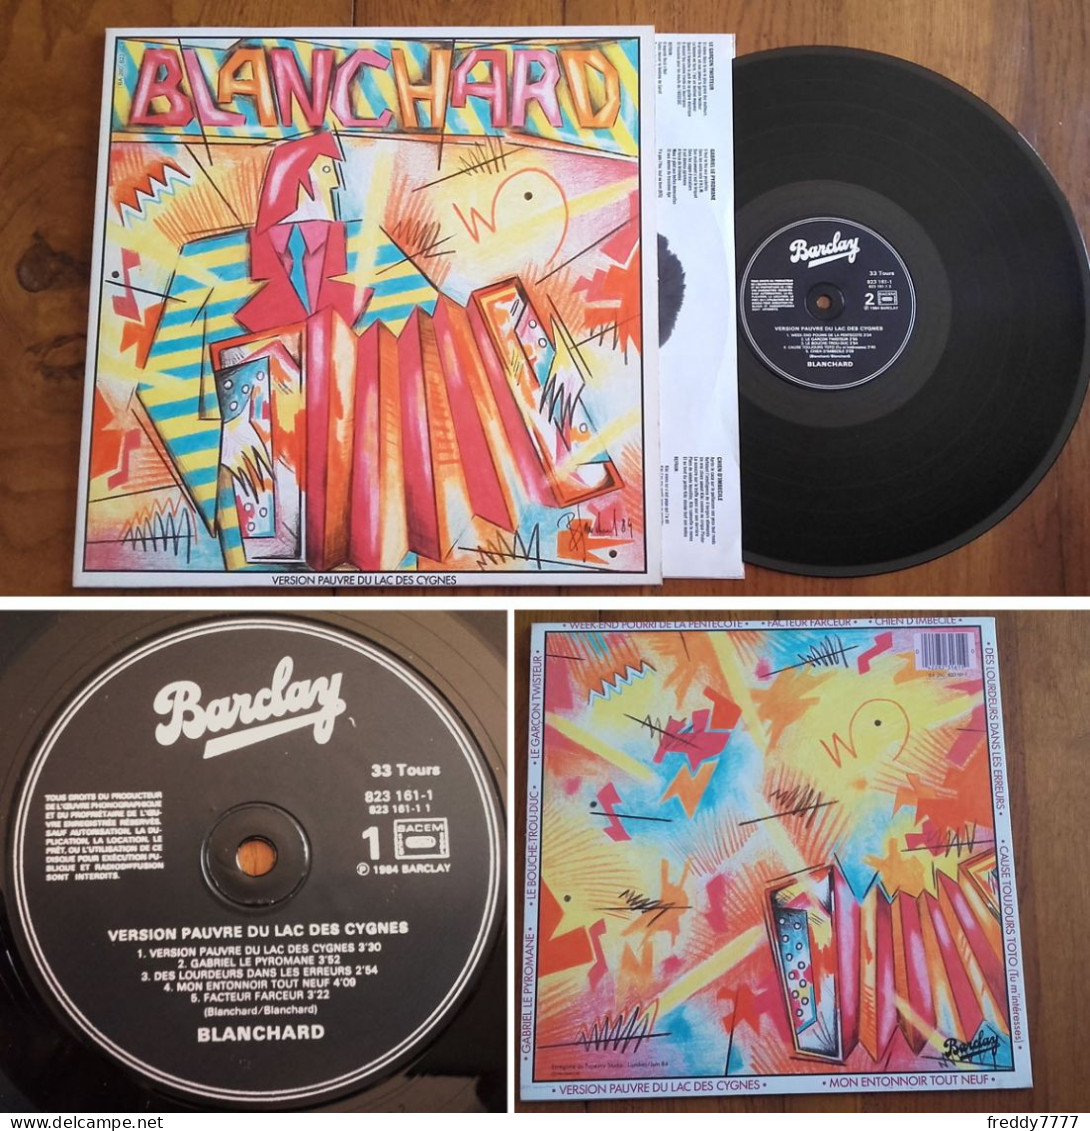 RARE French LP 33t RPM (12") GERARD BLANCHARD «Version Pauvre Du Lac Des Cygnes» (1984) - Collectors